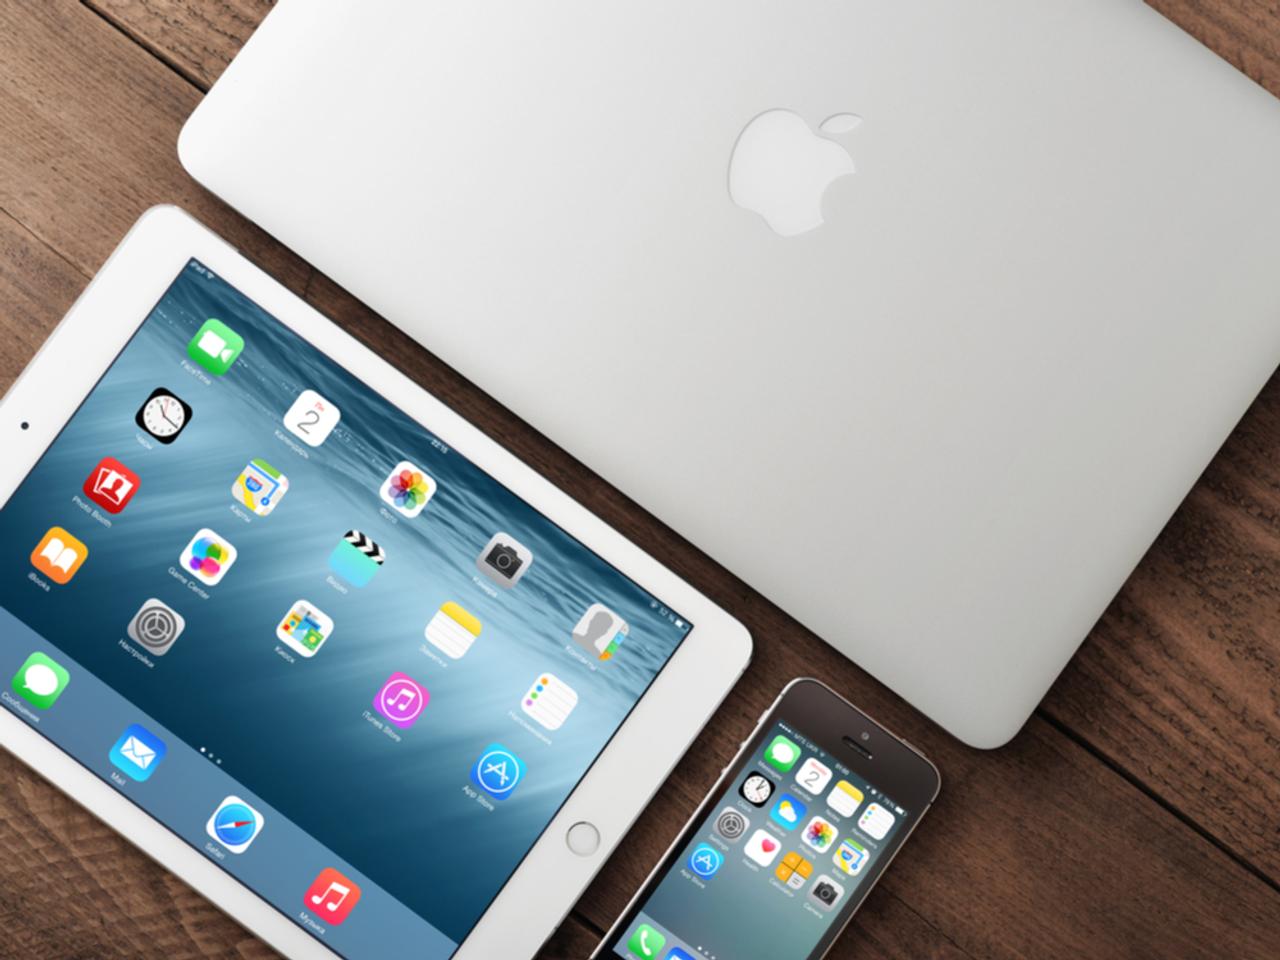 3月からApple新製品が続々登場か。新型iPadにMacBook、Apple Watchまで!?